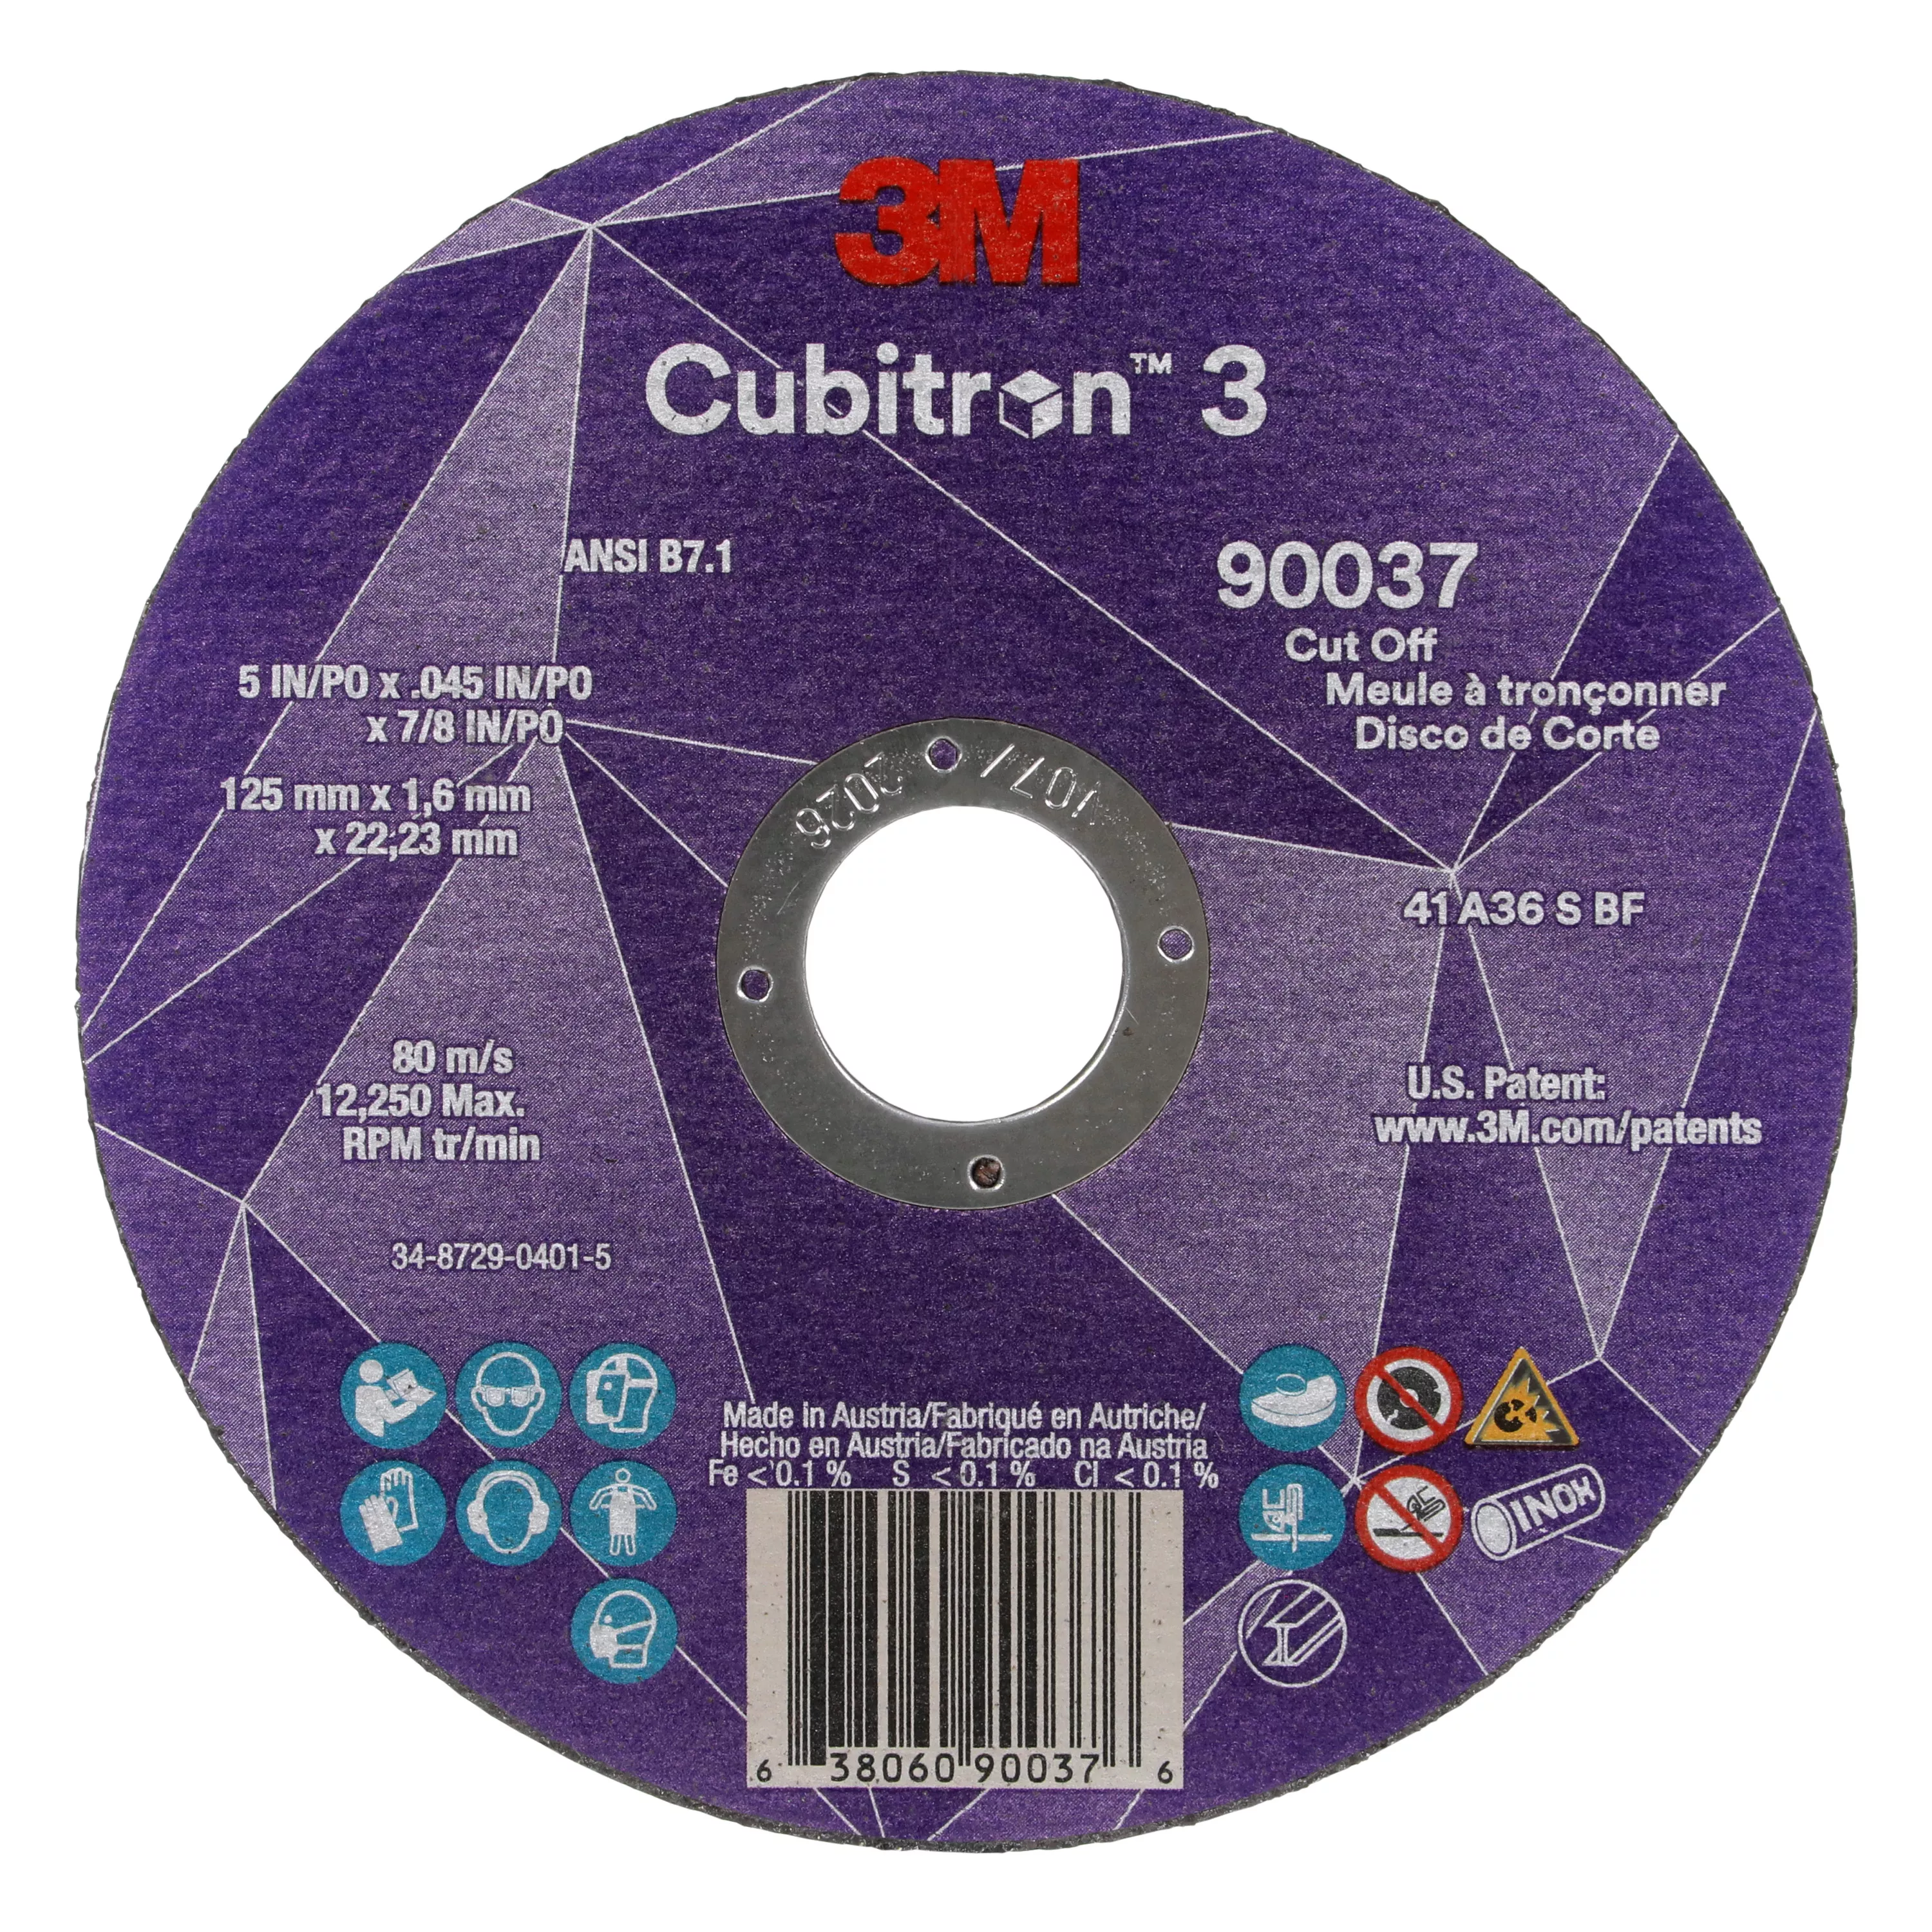 3M™ Cubitron™ 3 Cut-Off Wheel, 90037, 36+, T1, 5 in x 0.045 in x 7/8 in
(125 x 1.6 x 22.23 mm), ANSI, 25/Pack, 50 ea/Case